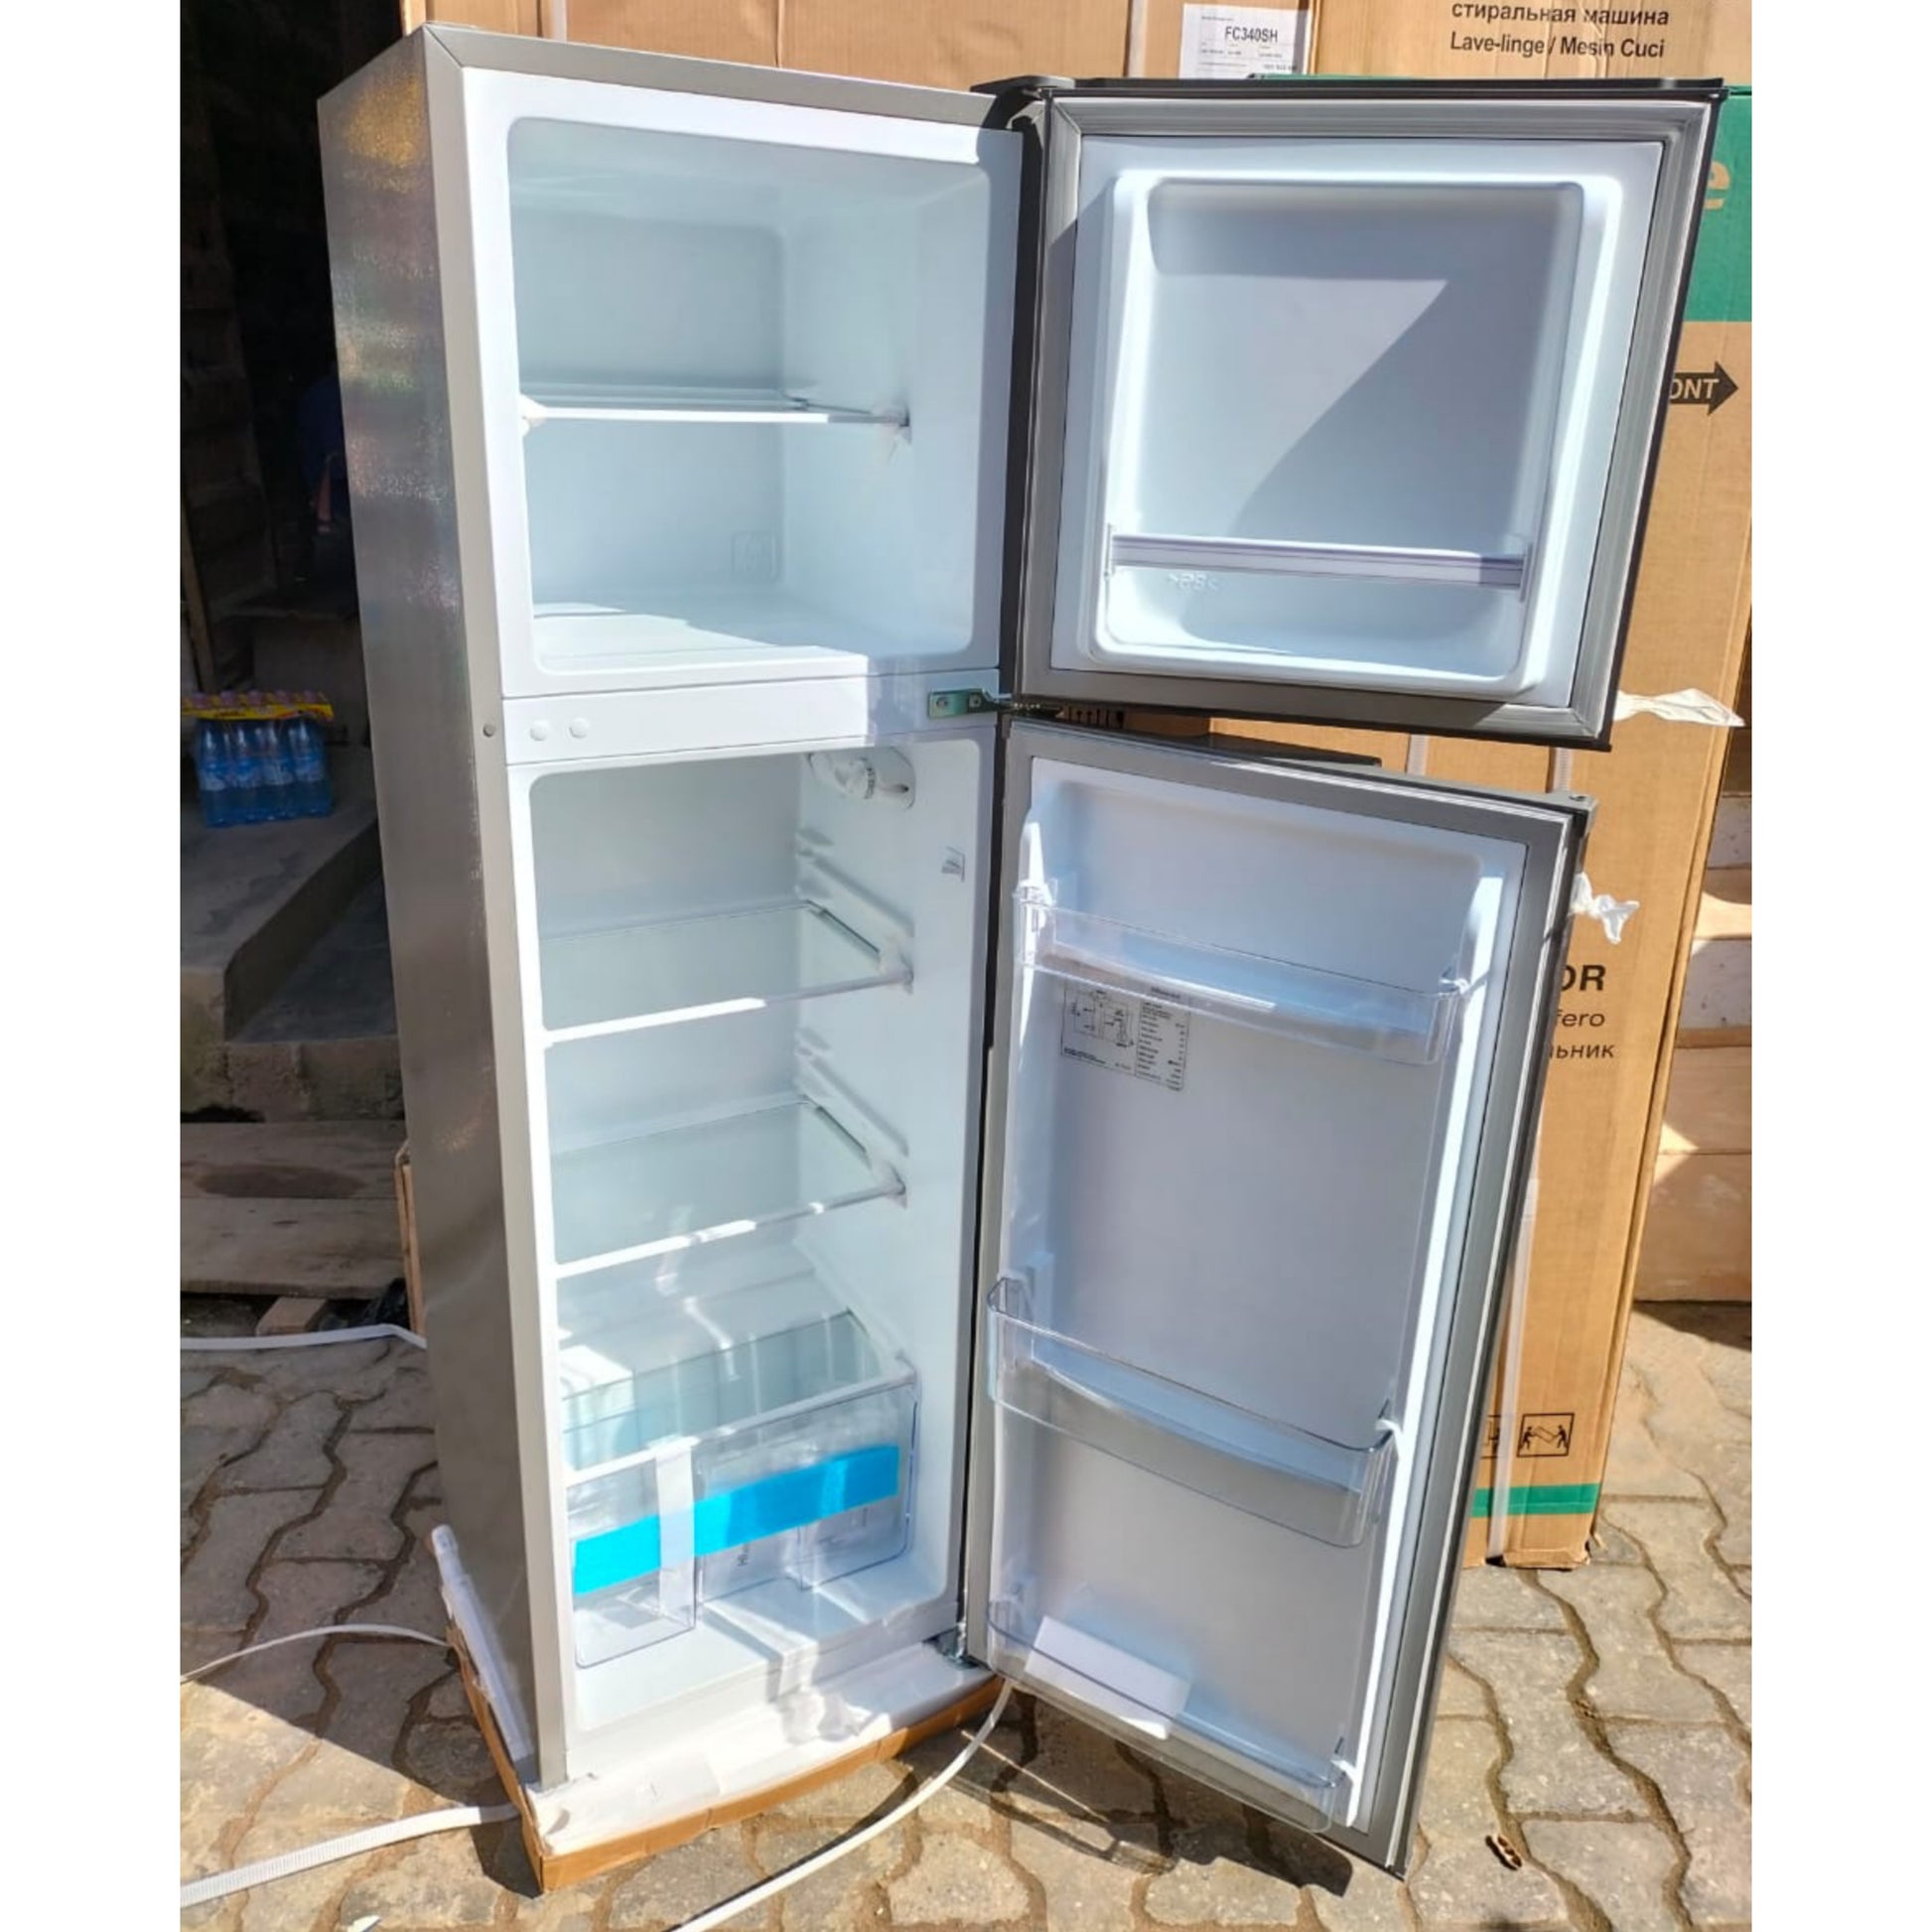 Hisense REF212DR 161L Double Door Top-Freezer Refrigerator - Brand New